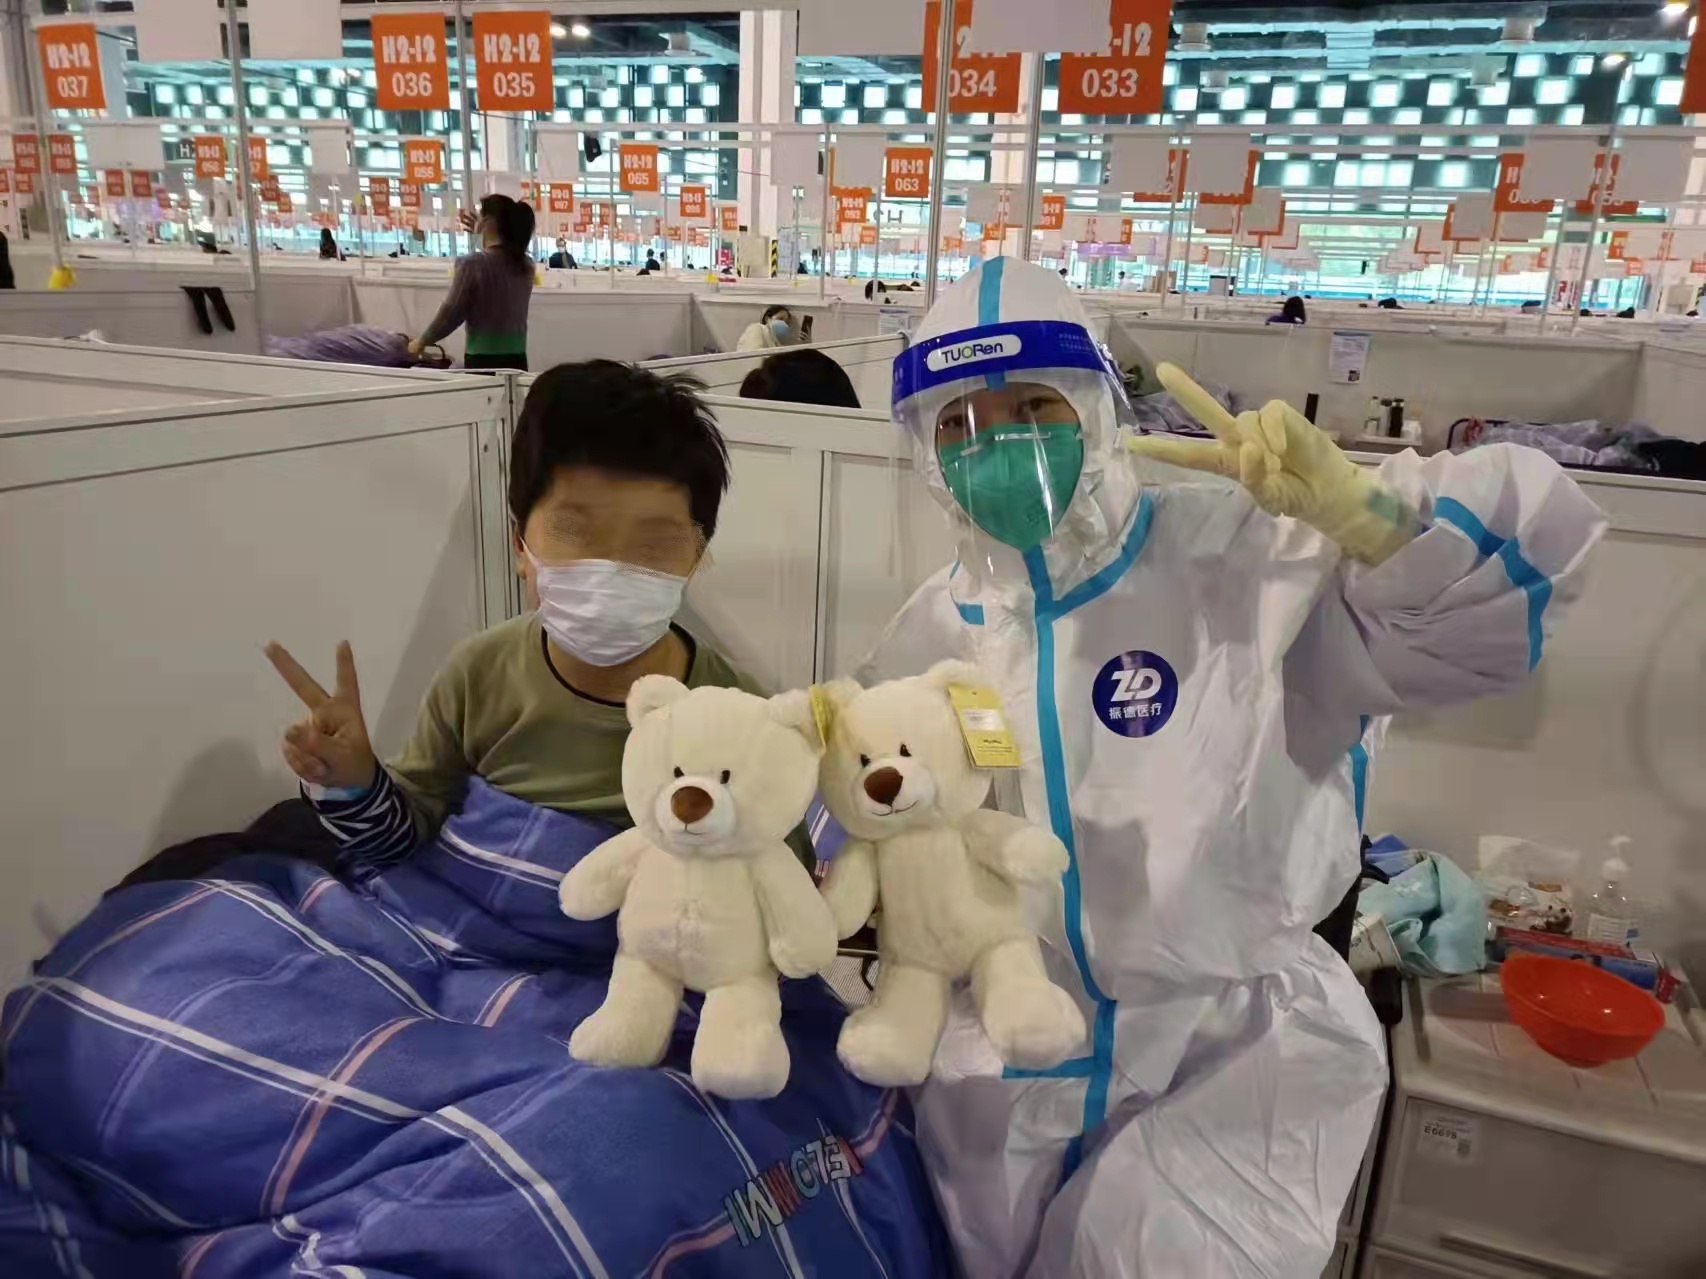 仁济医院医疗队为15周岁以下的患者小朋友准备了毛绒玩具。